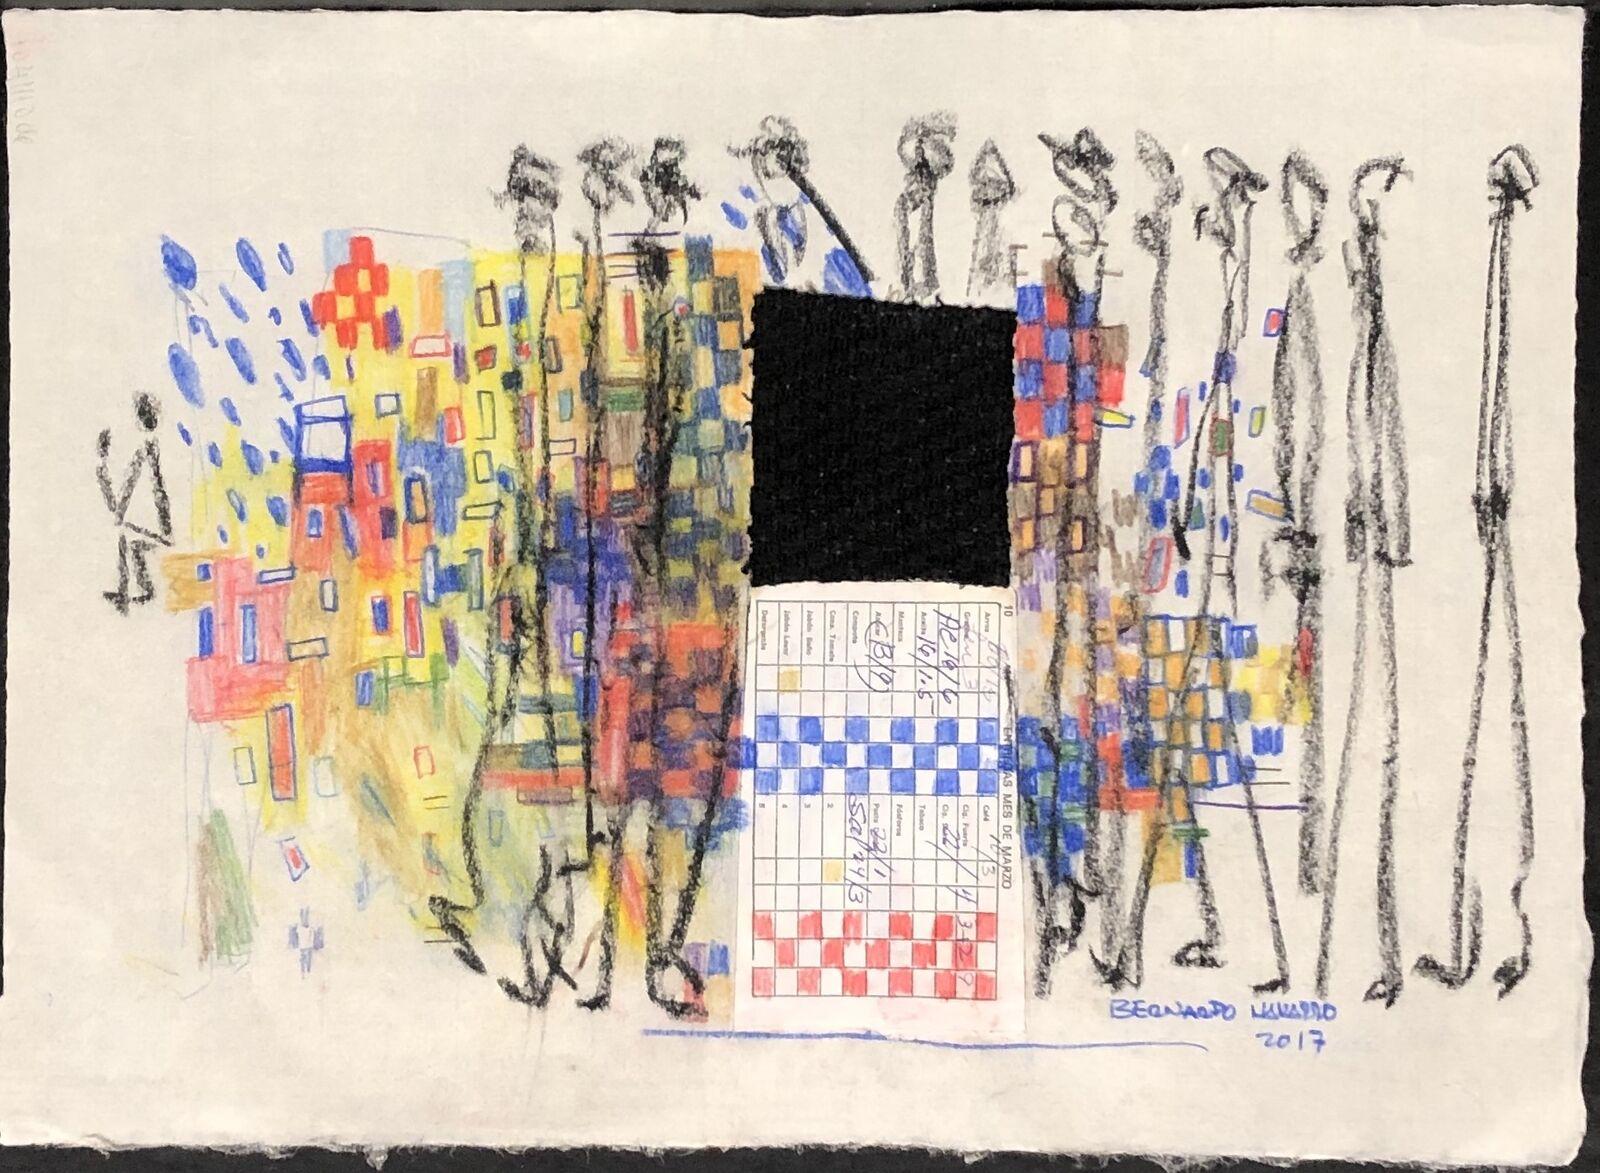 Bernardo Navarro Tomas (Cuba, 1977)
Sans titre, 2017
techniques mixtes sur papier japonais
12,3 x 17 in. (31 x 43 cm)
ID : NAA-302
Signé par l'auteur